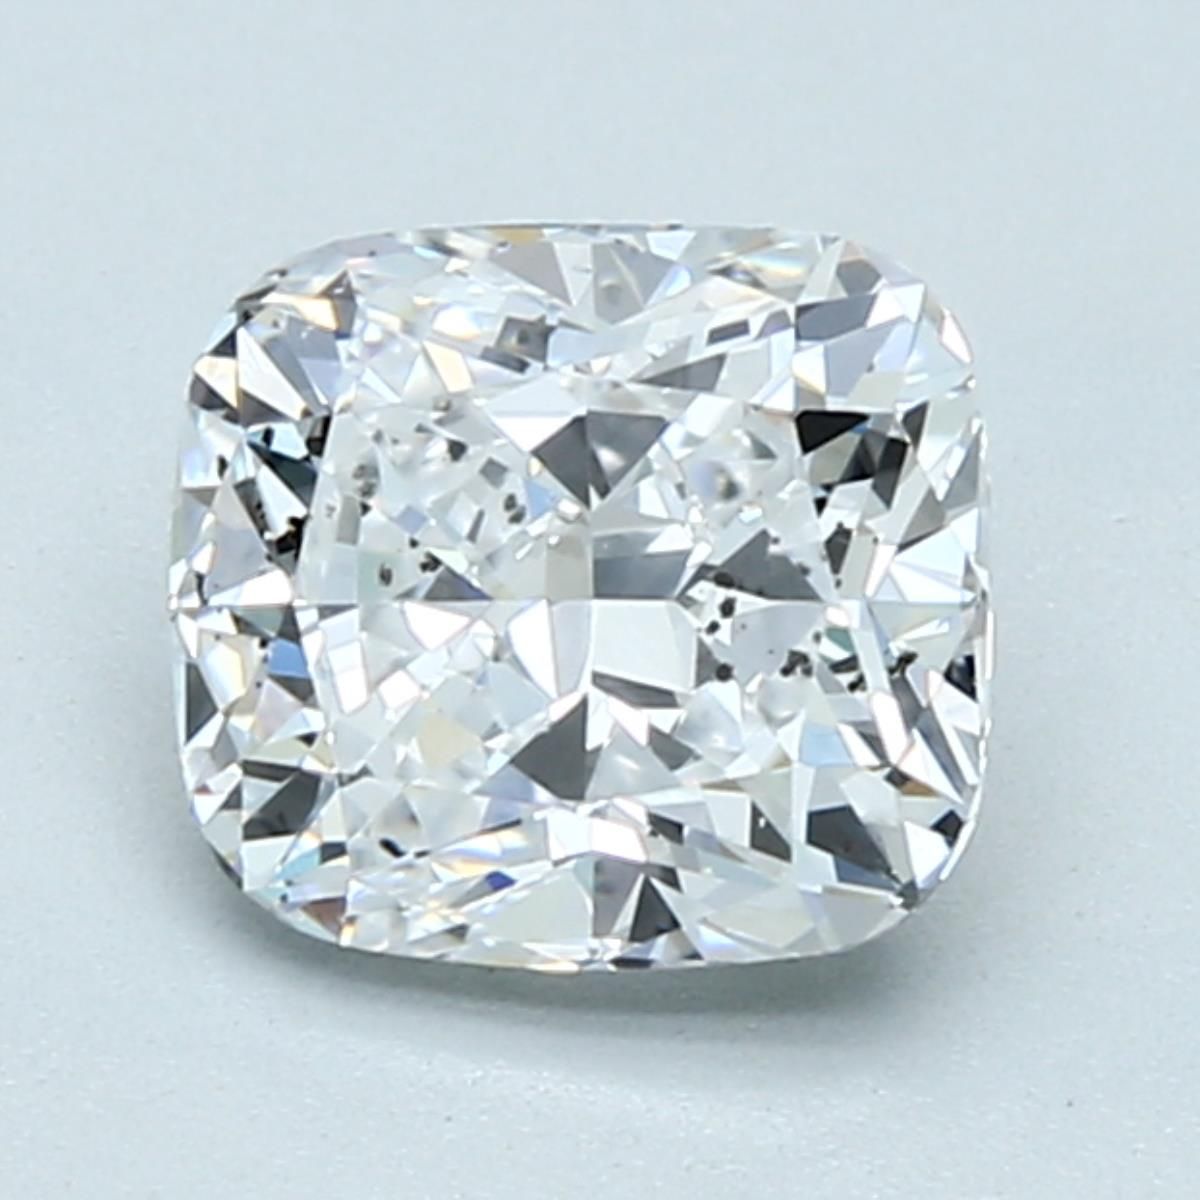 Diamant Coussin 1.51 ct - Couleur D - Pureté SI2